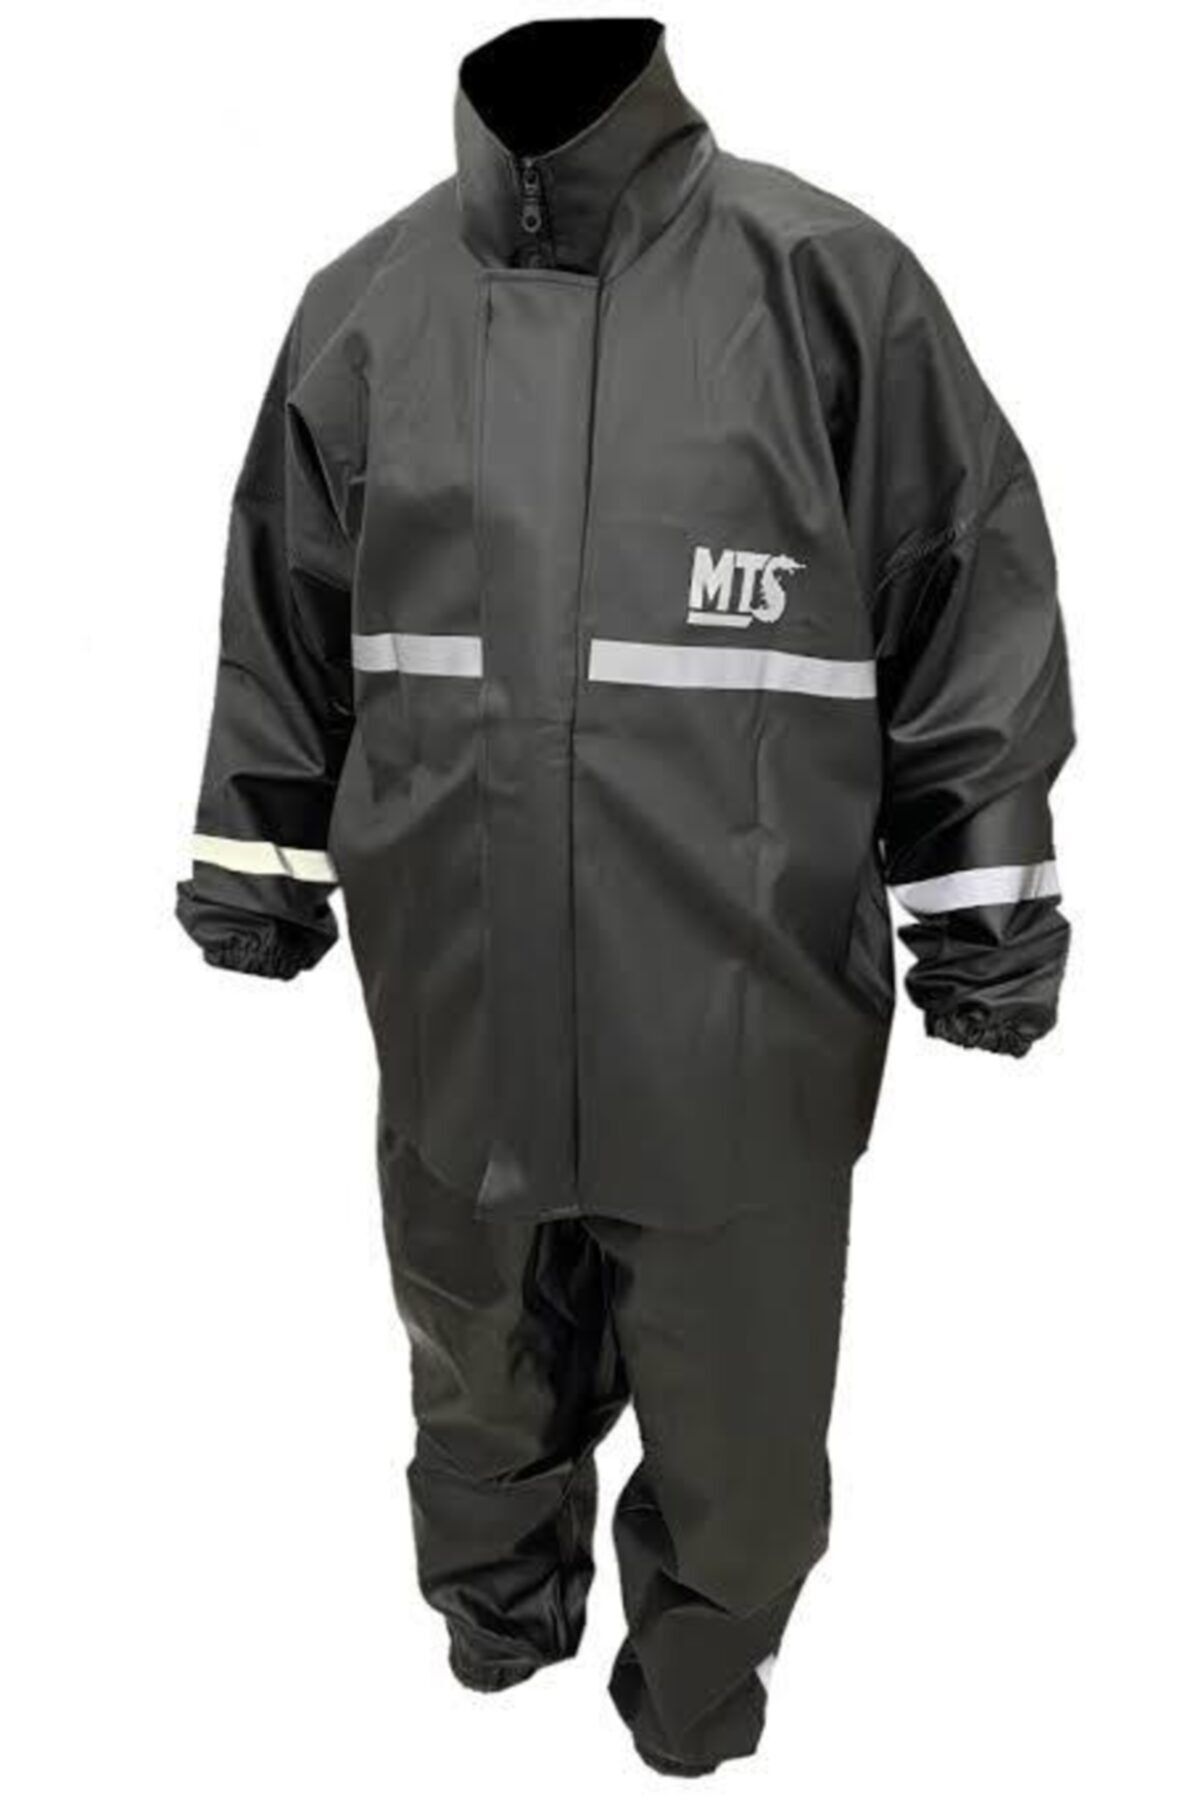 MTS Motorsiklet Yağmurluk Ve Pantolon ( Yağmur - Rüzgar Geçirmez )